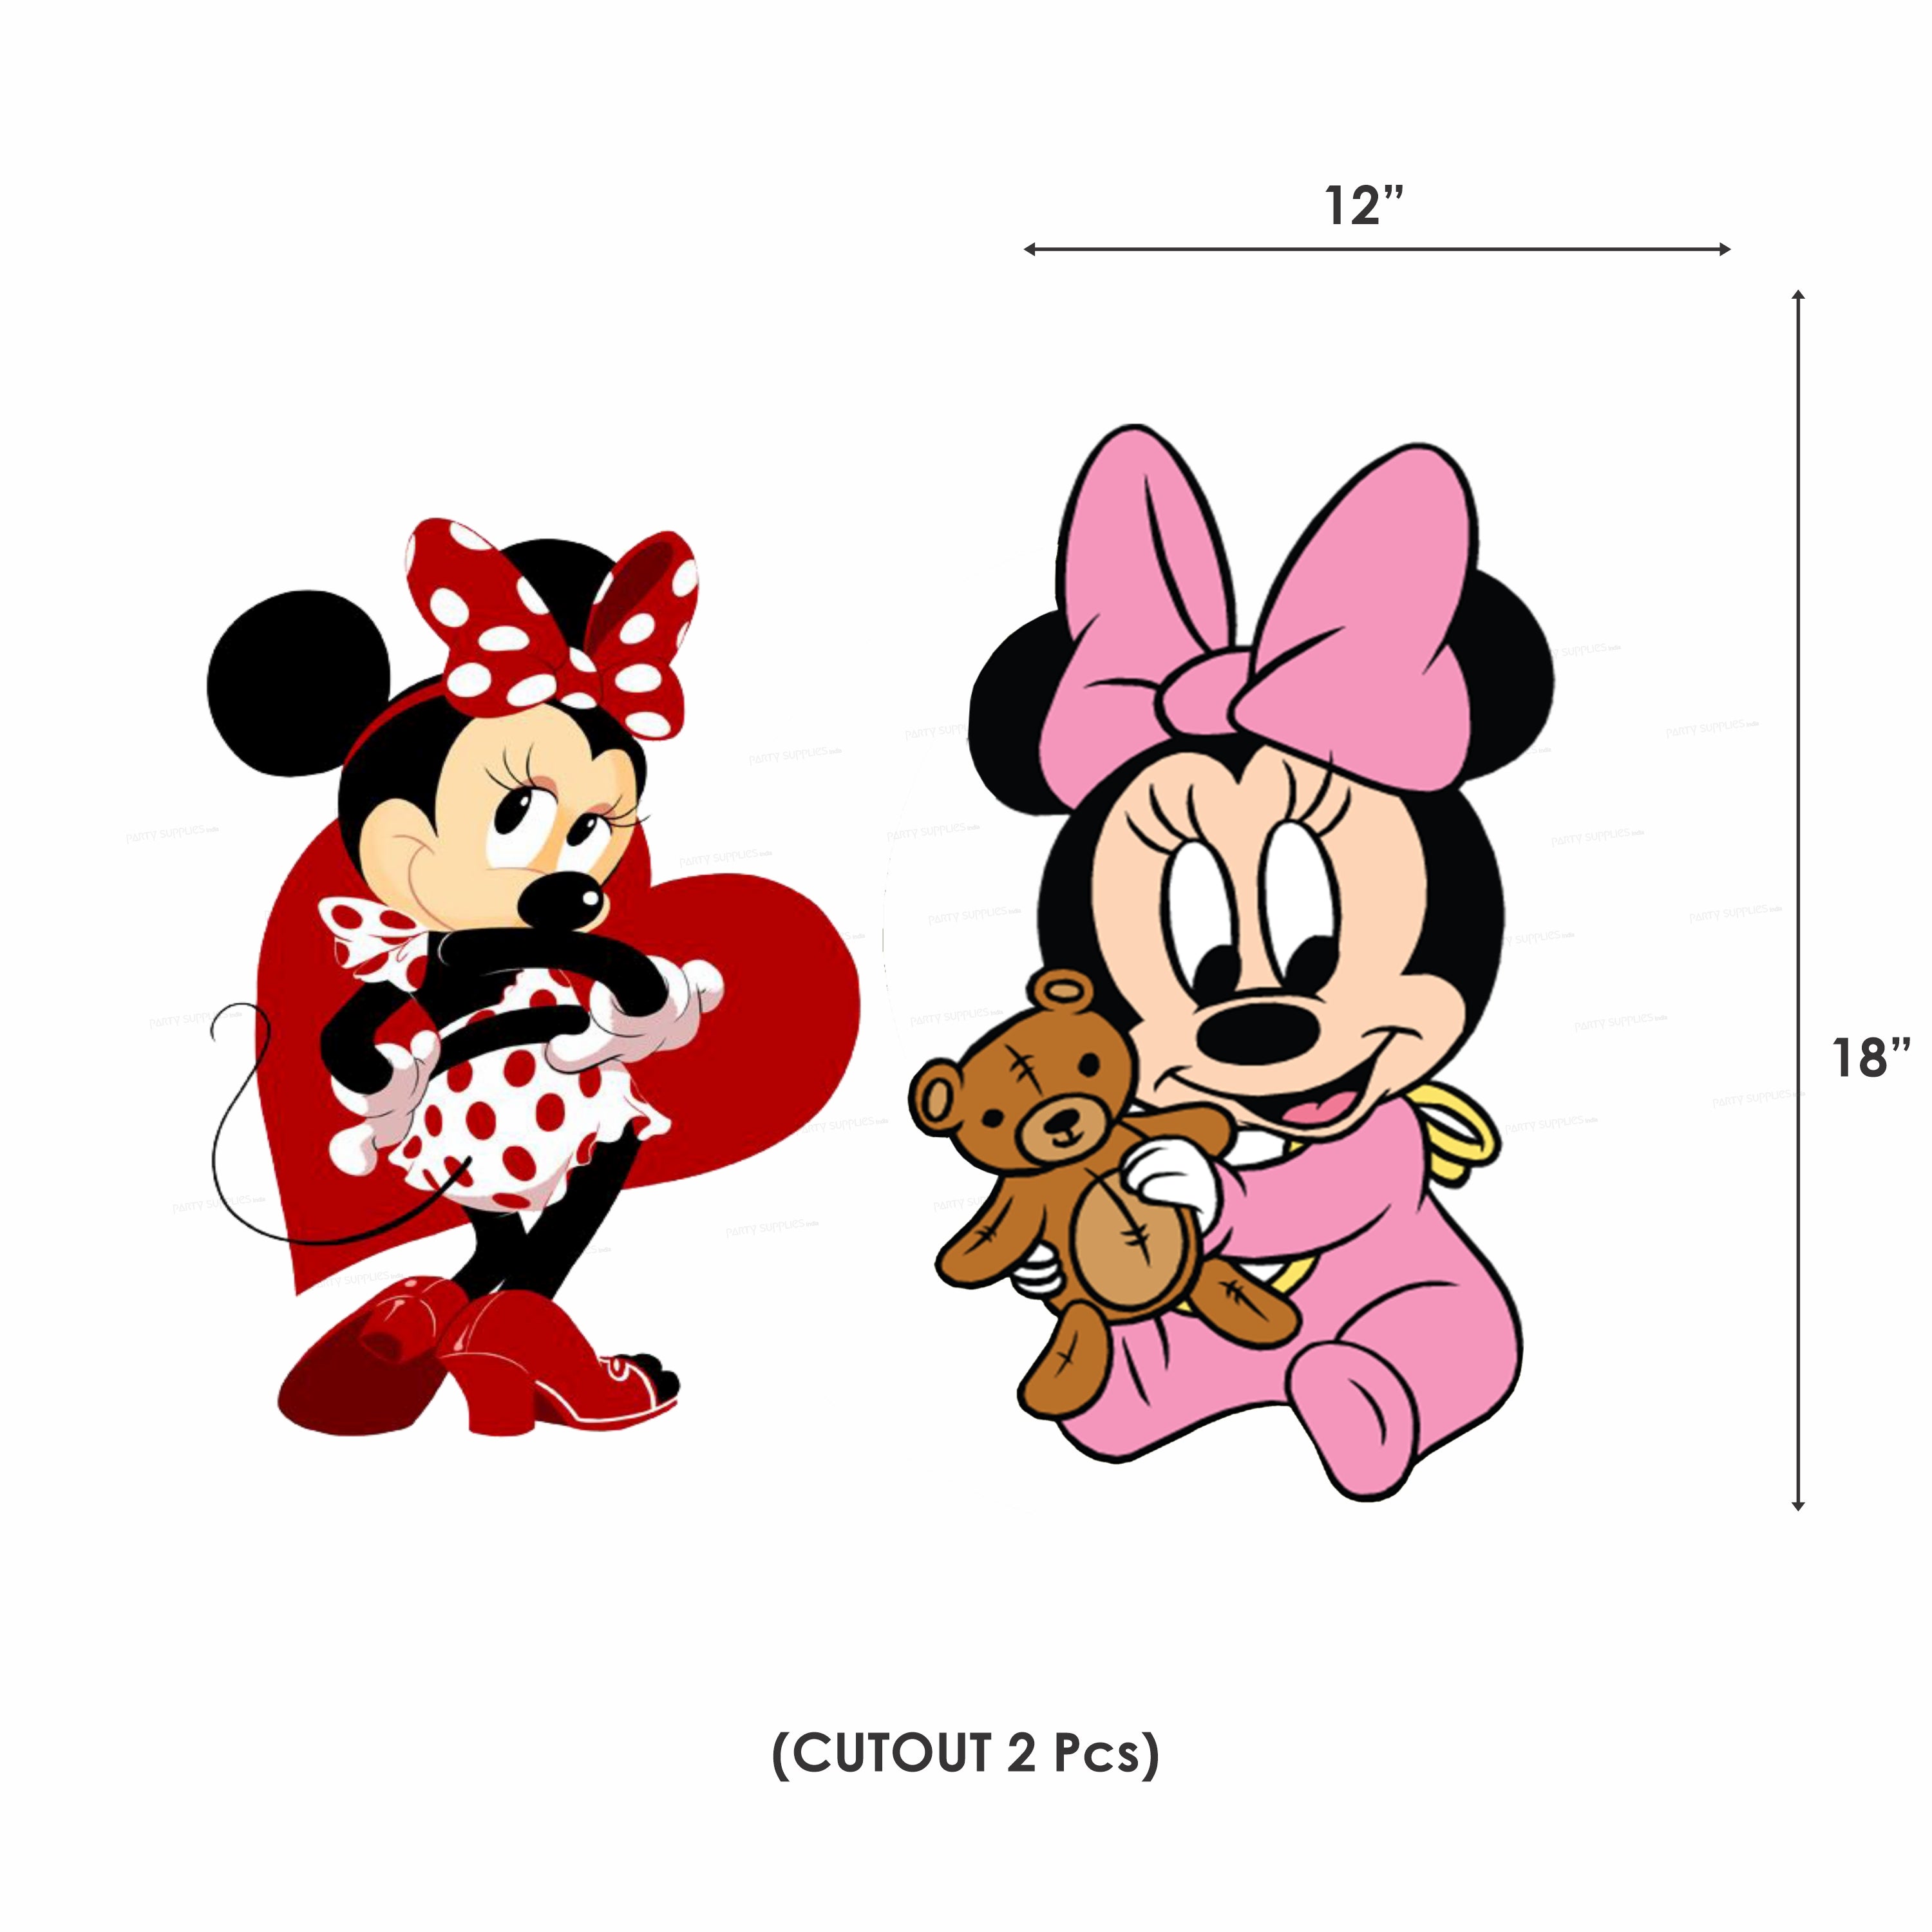 PSI Minnie Mouse Theme Exclusive Kit